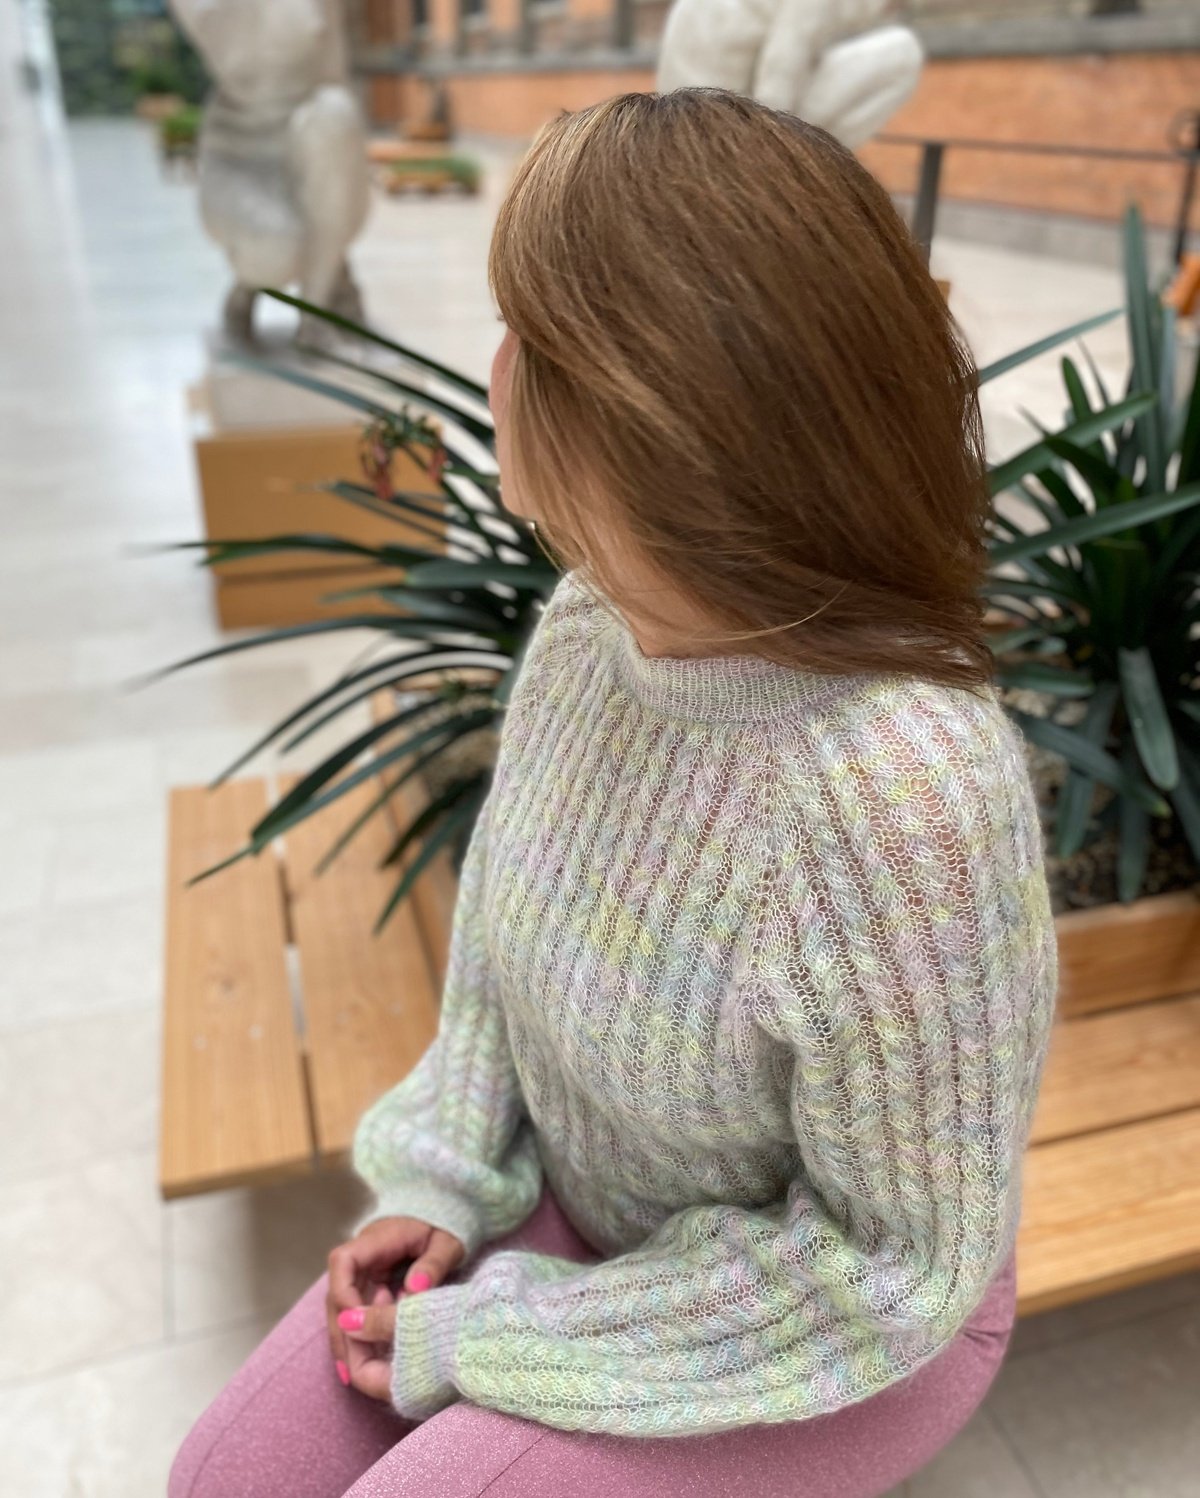 Twist and Shout Sweater English Popknit knitting pattern